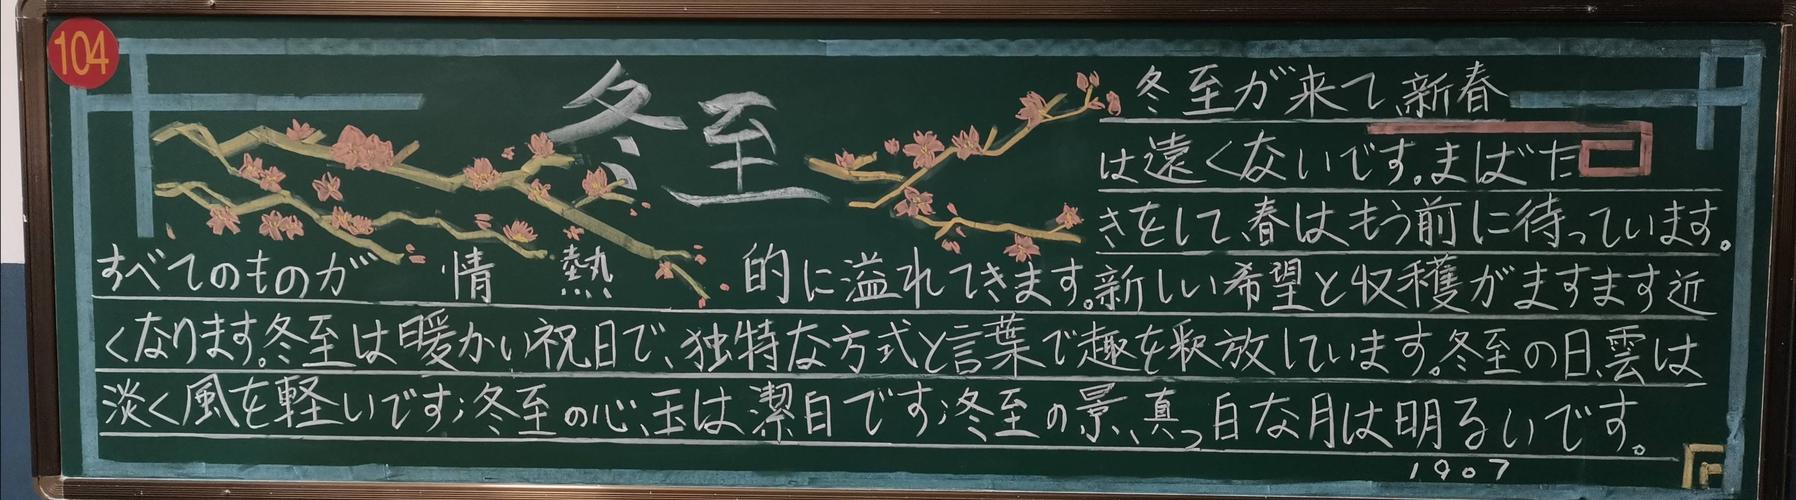 外国语学院优秀黑板报弘扬传统节日之冬至